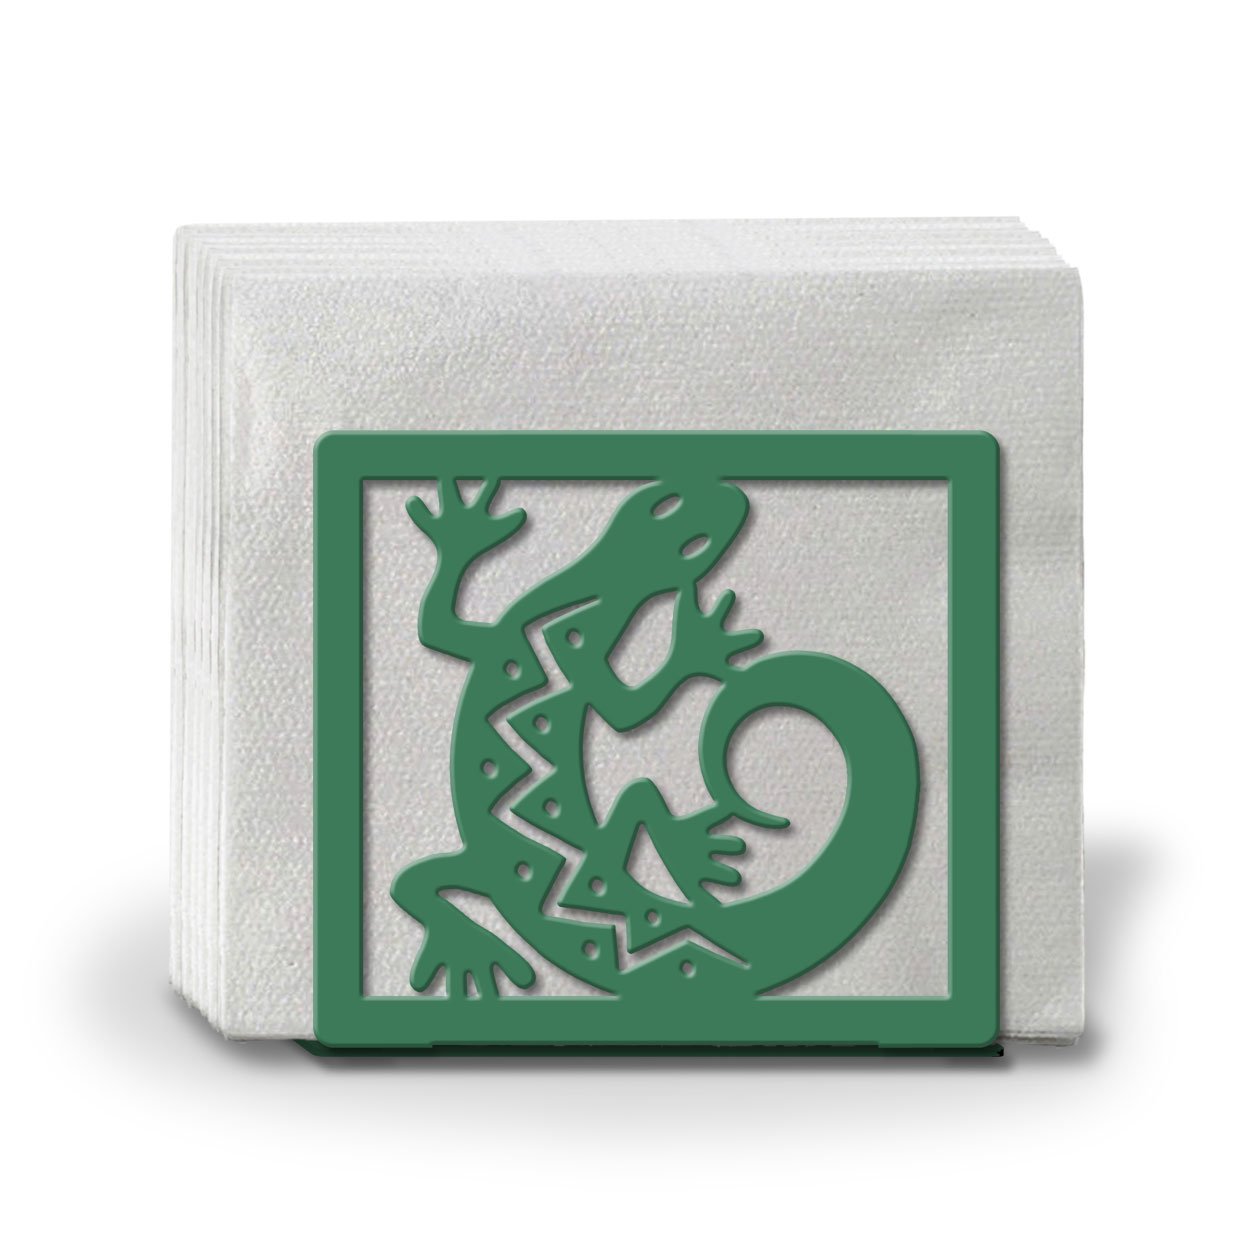 621106 - Gecko Metal Napkin or Letter Holder - Choose Color